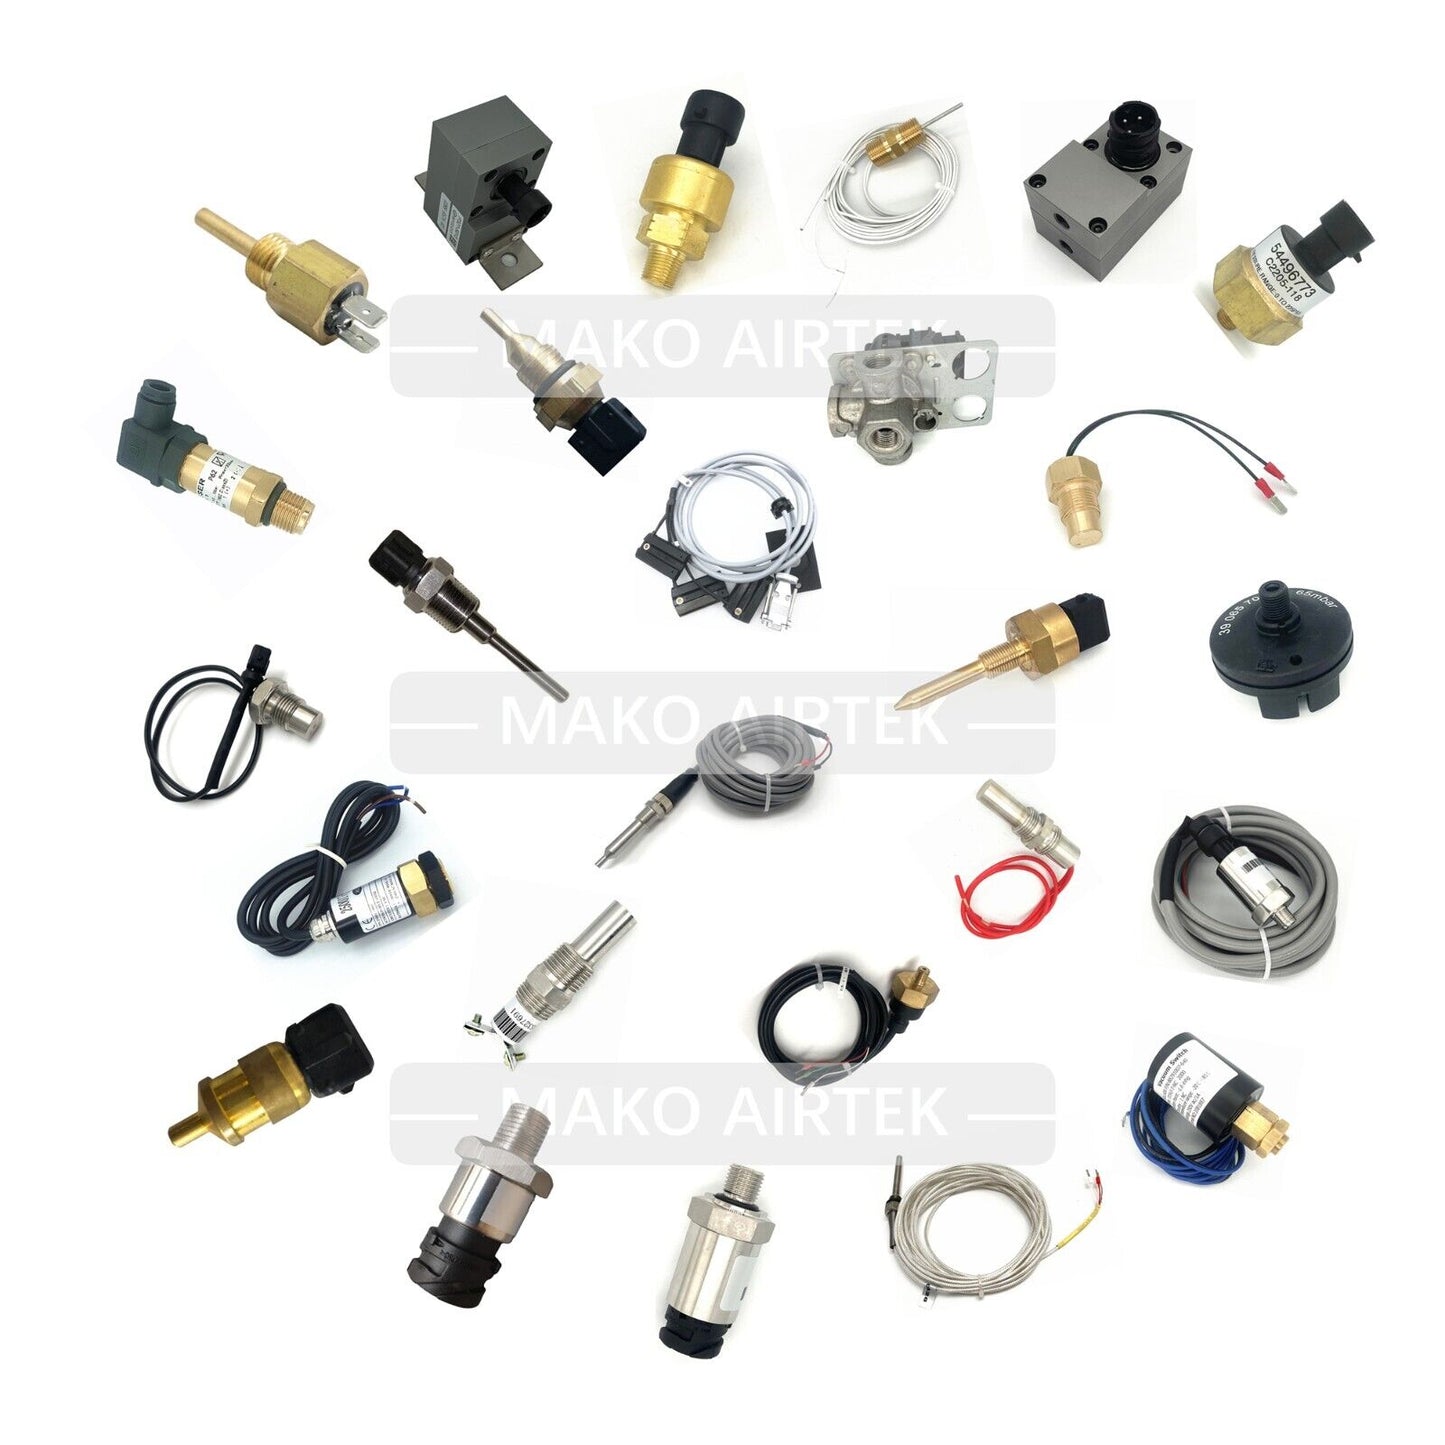 02250110-988 Repair Kit Fits Sullair Air Compressor